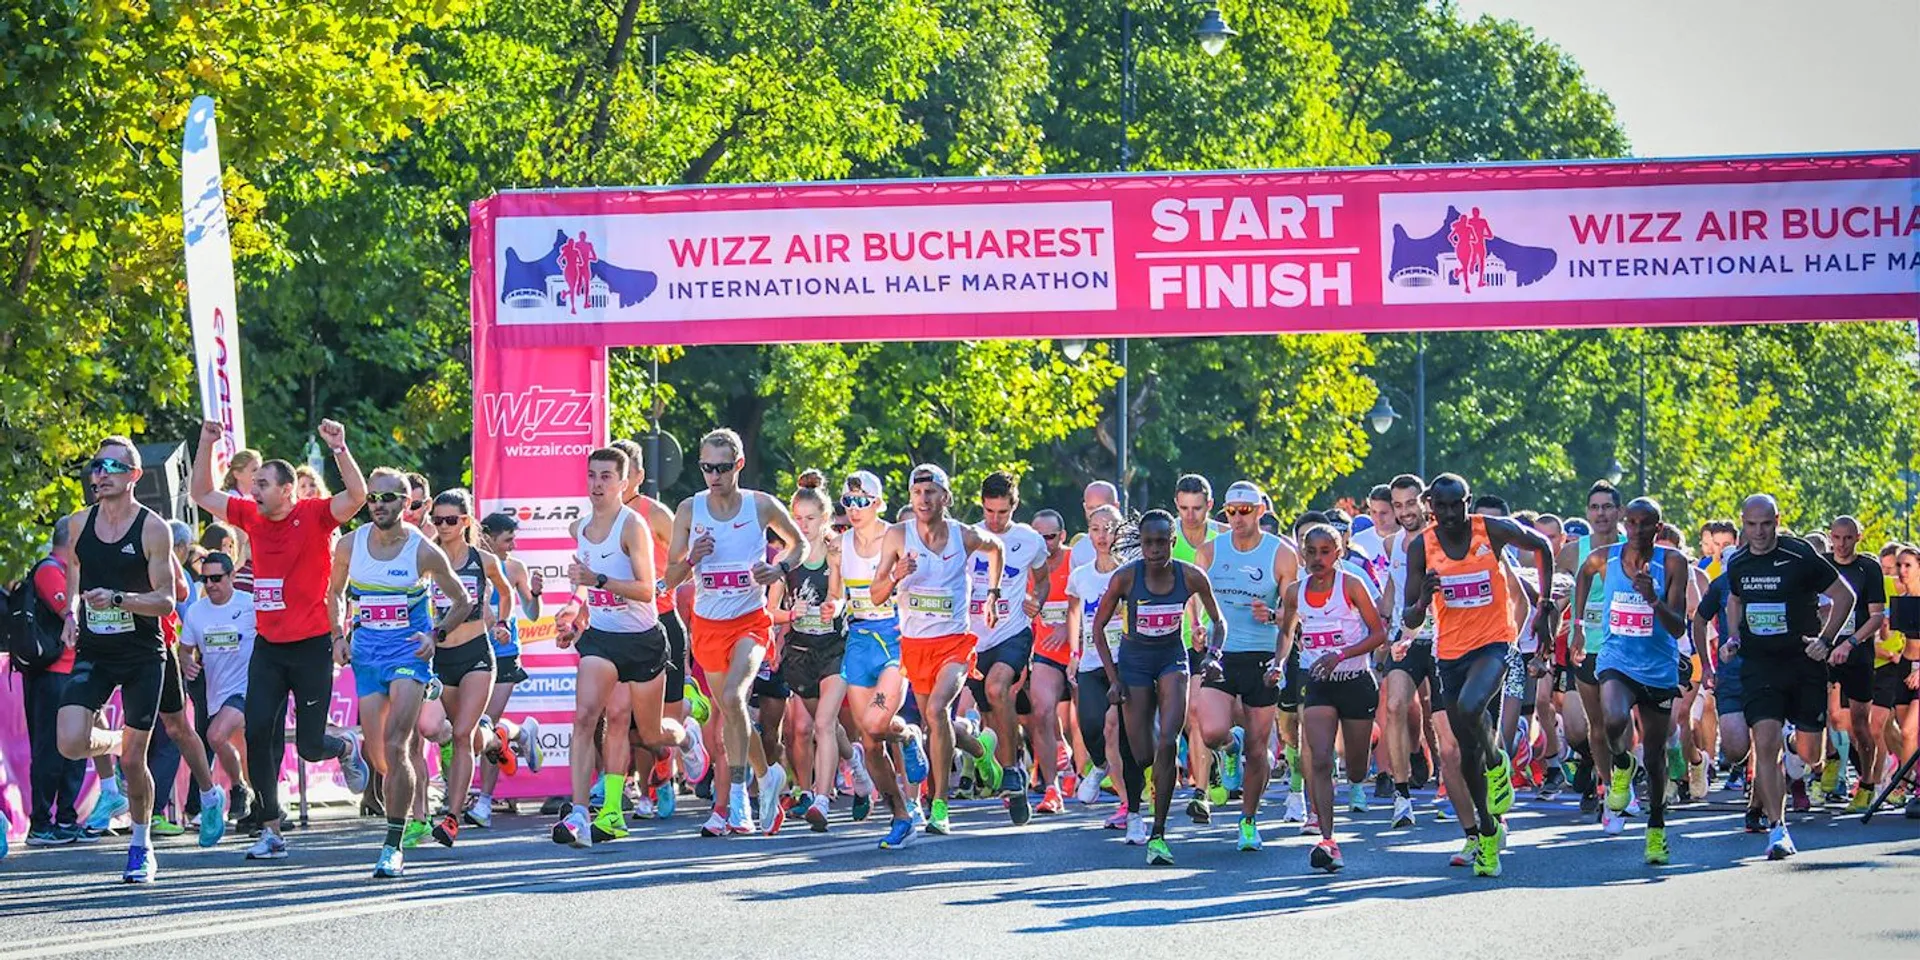 Wizz Air Bucharest International Half-marathon